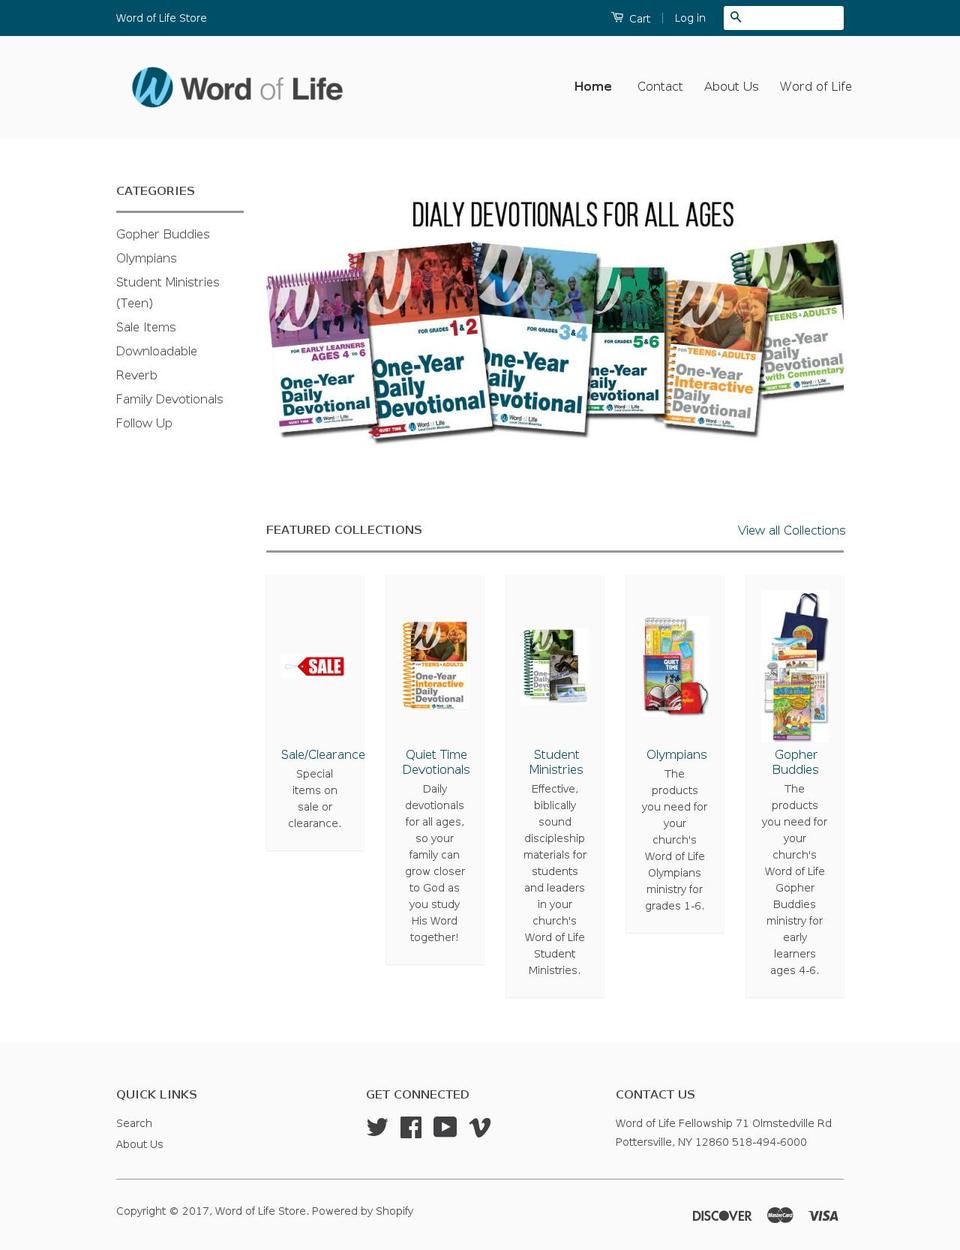 wolstore.org shopify website screenshot